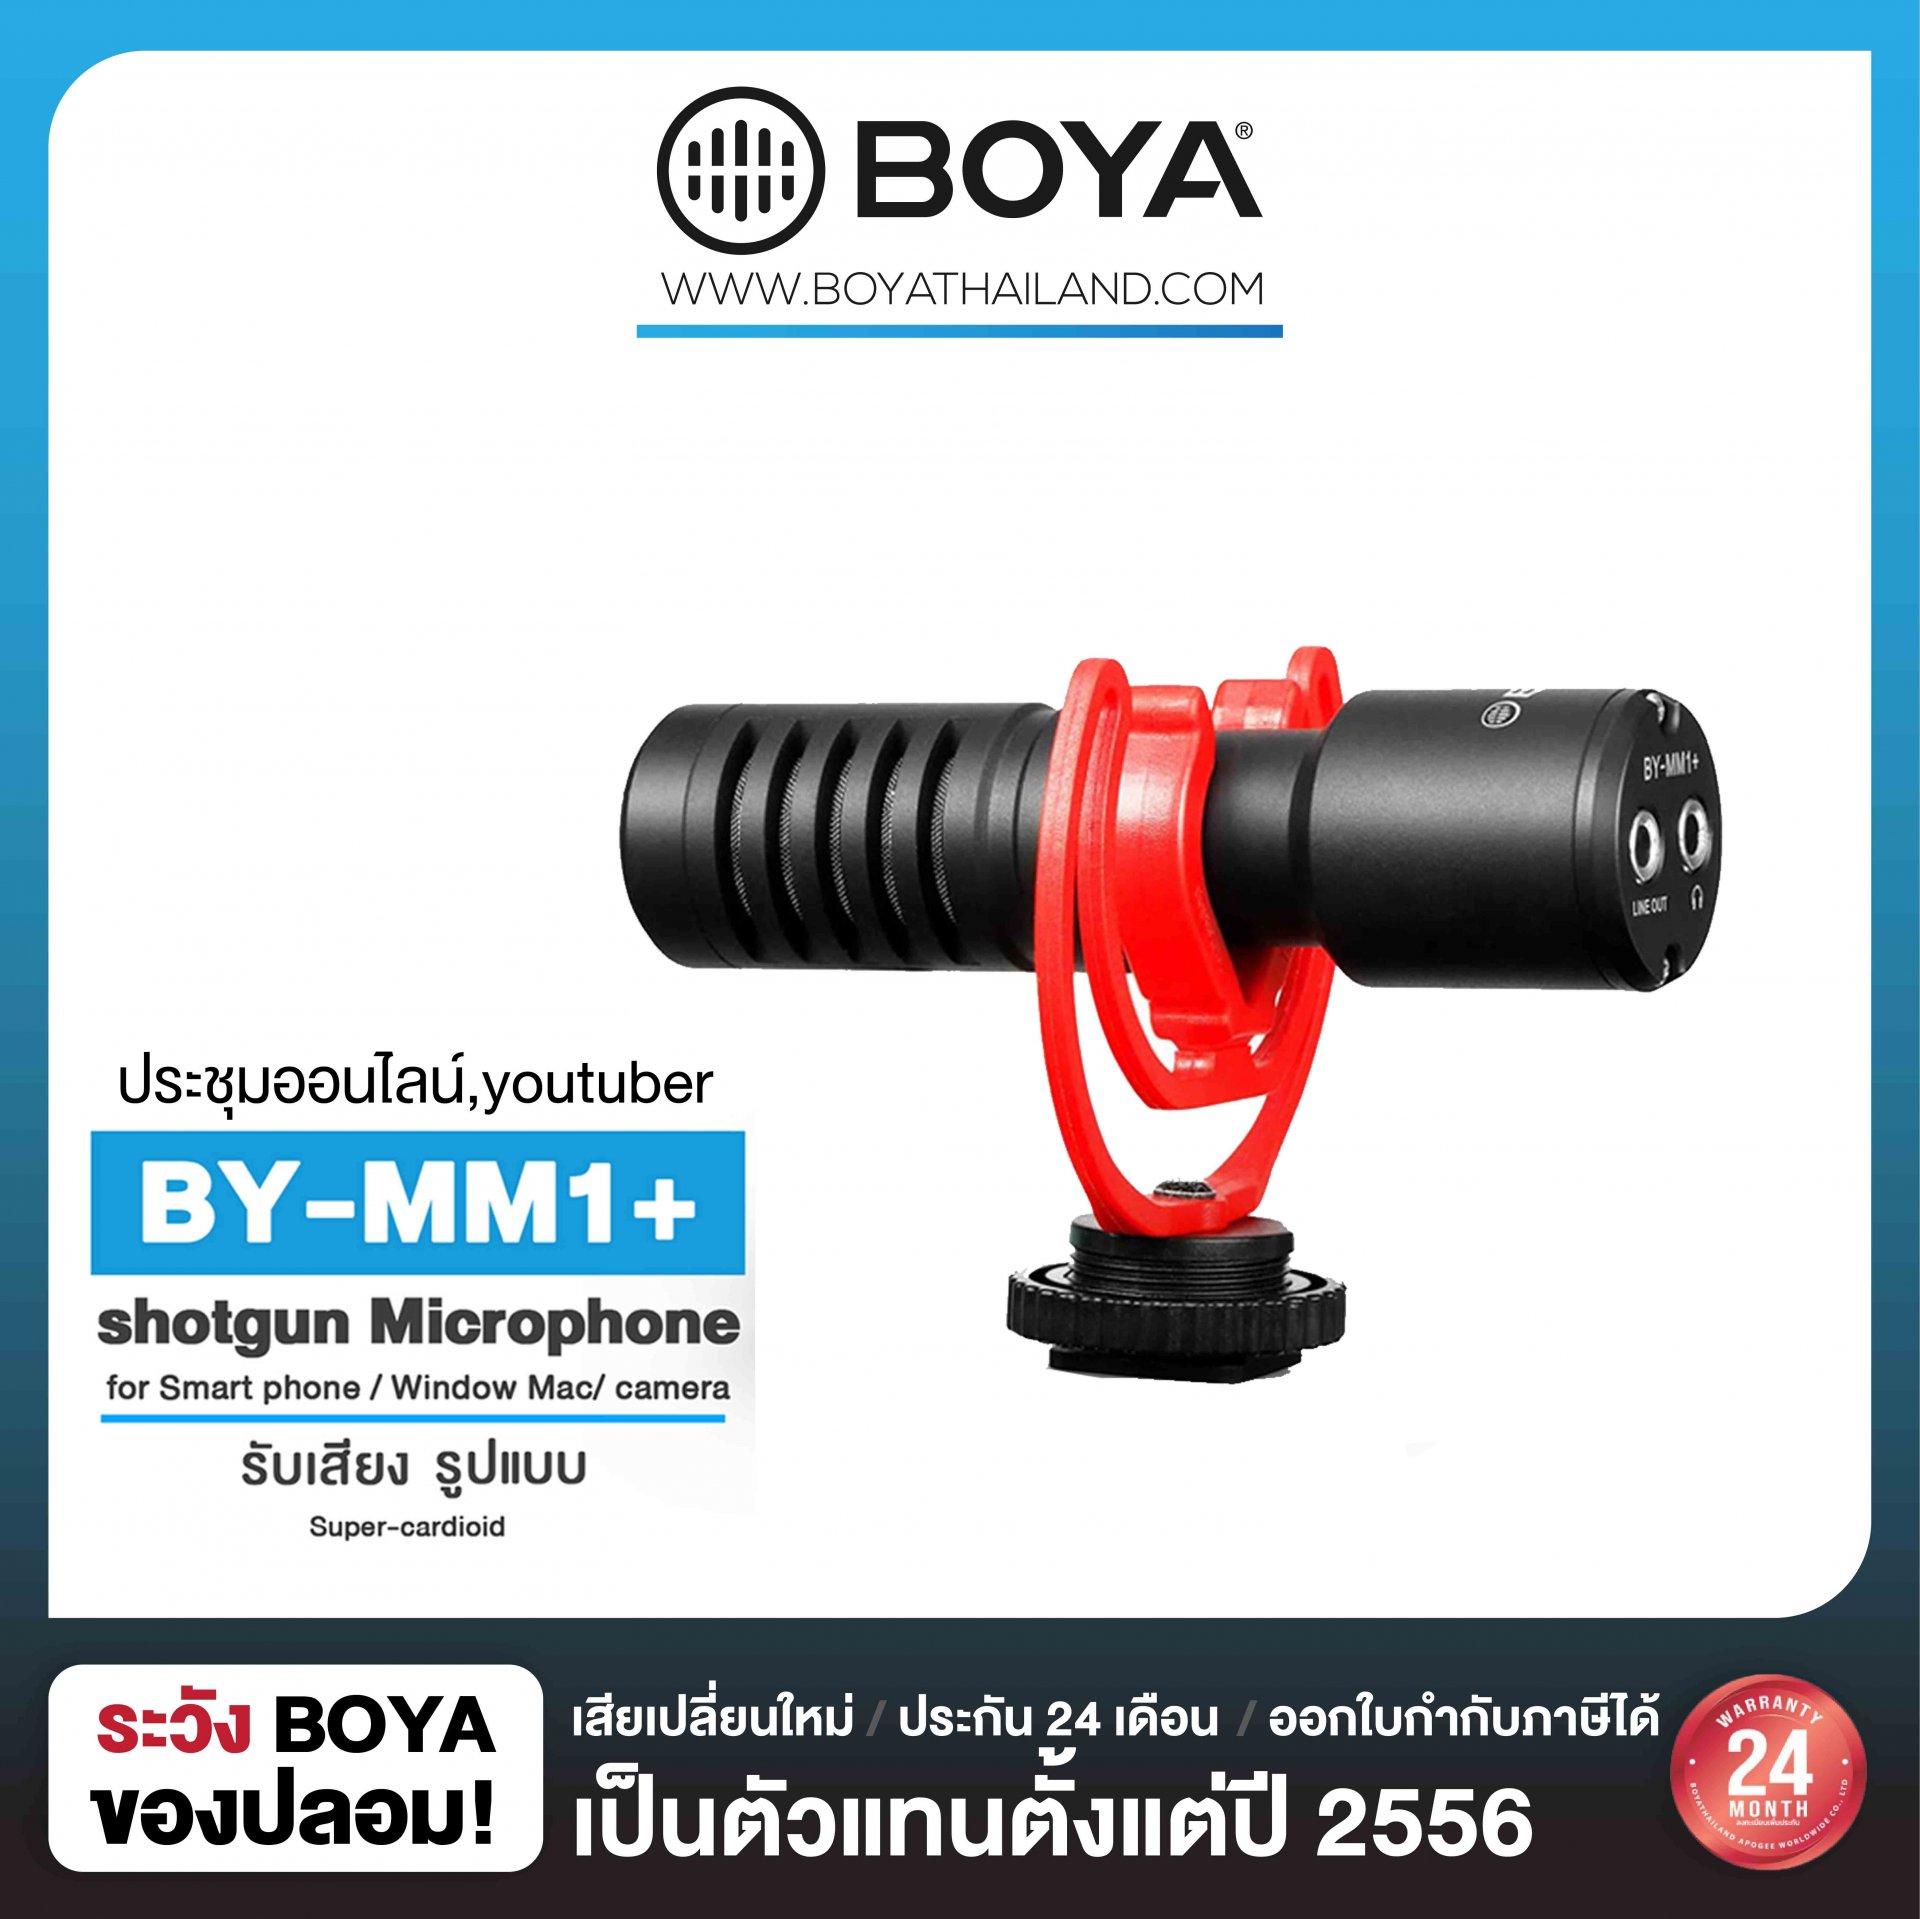 BOYA BY-MM1+ Super-cardioid Condenser Shotgun Microphone